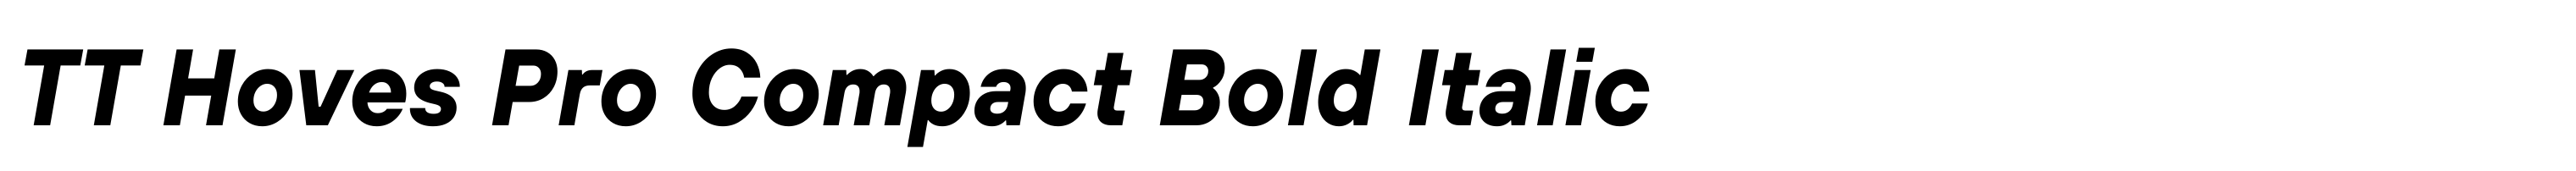 TT Hoves Pro Compact Bold Italic